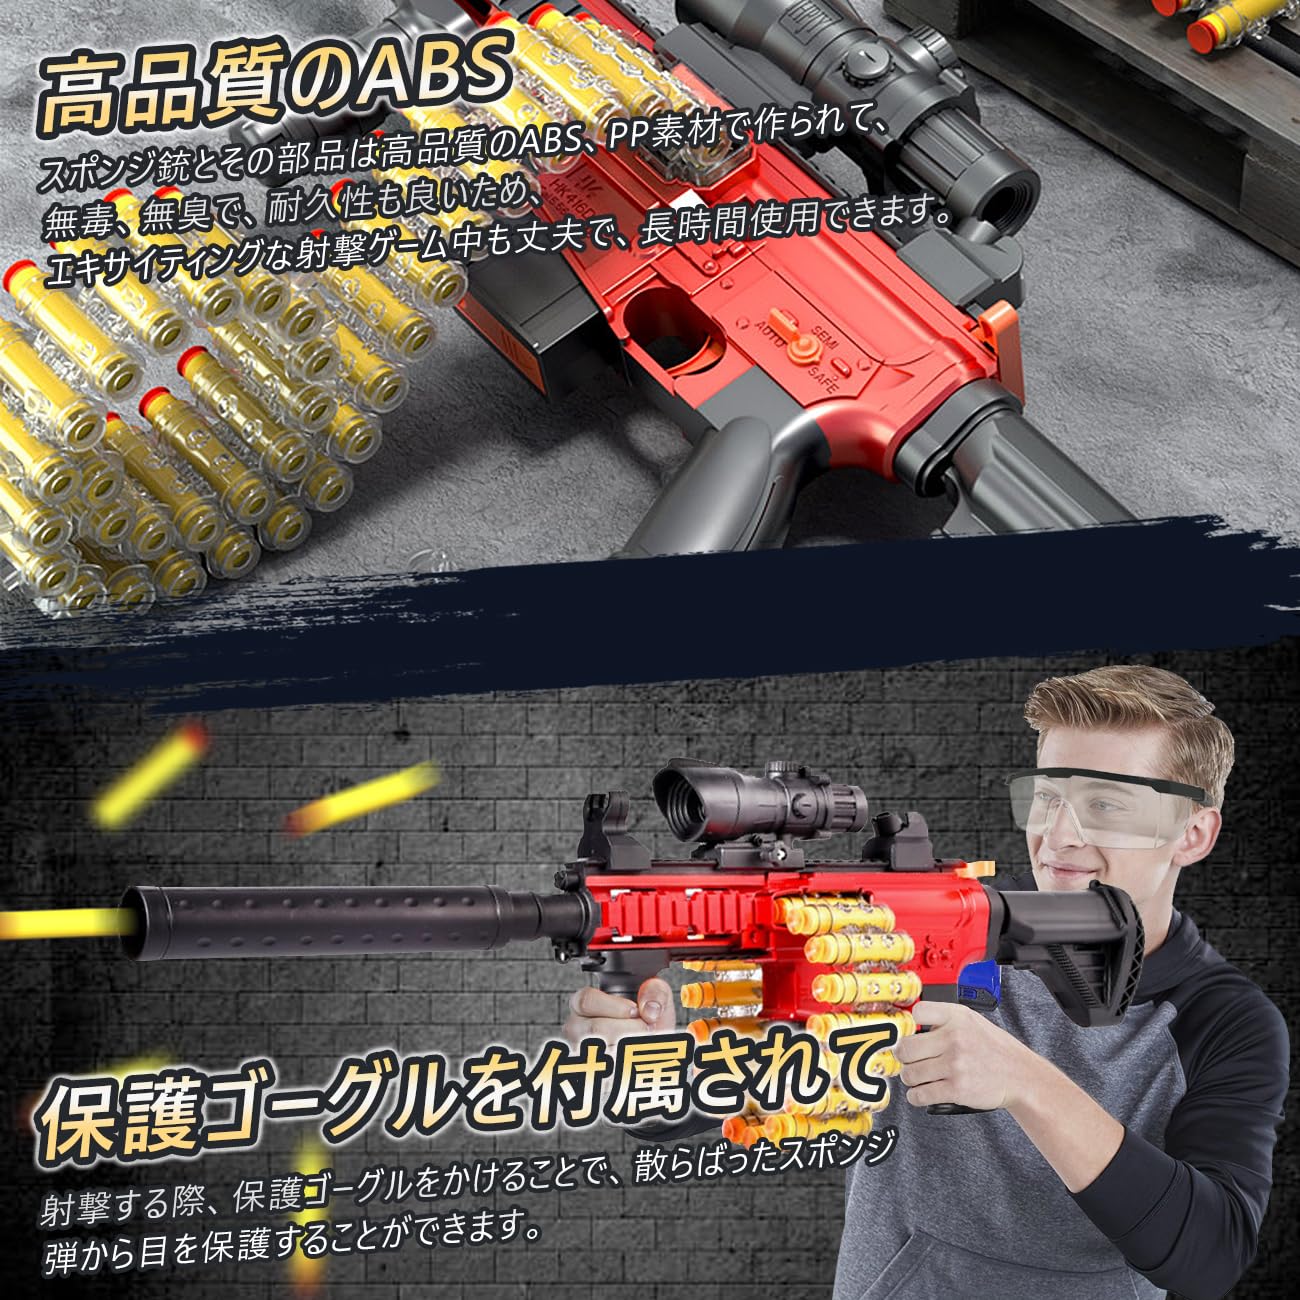 スポンジ銃 おもちゃ 電動 ショットガン 3種射撃モード 男の子 プレゼント